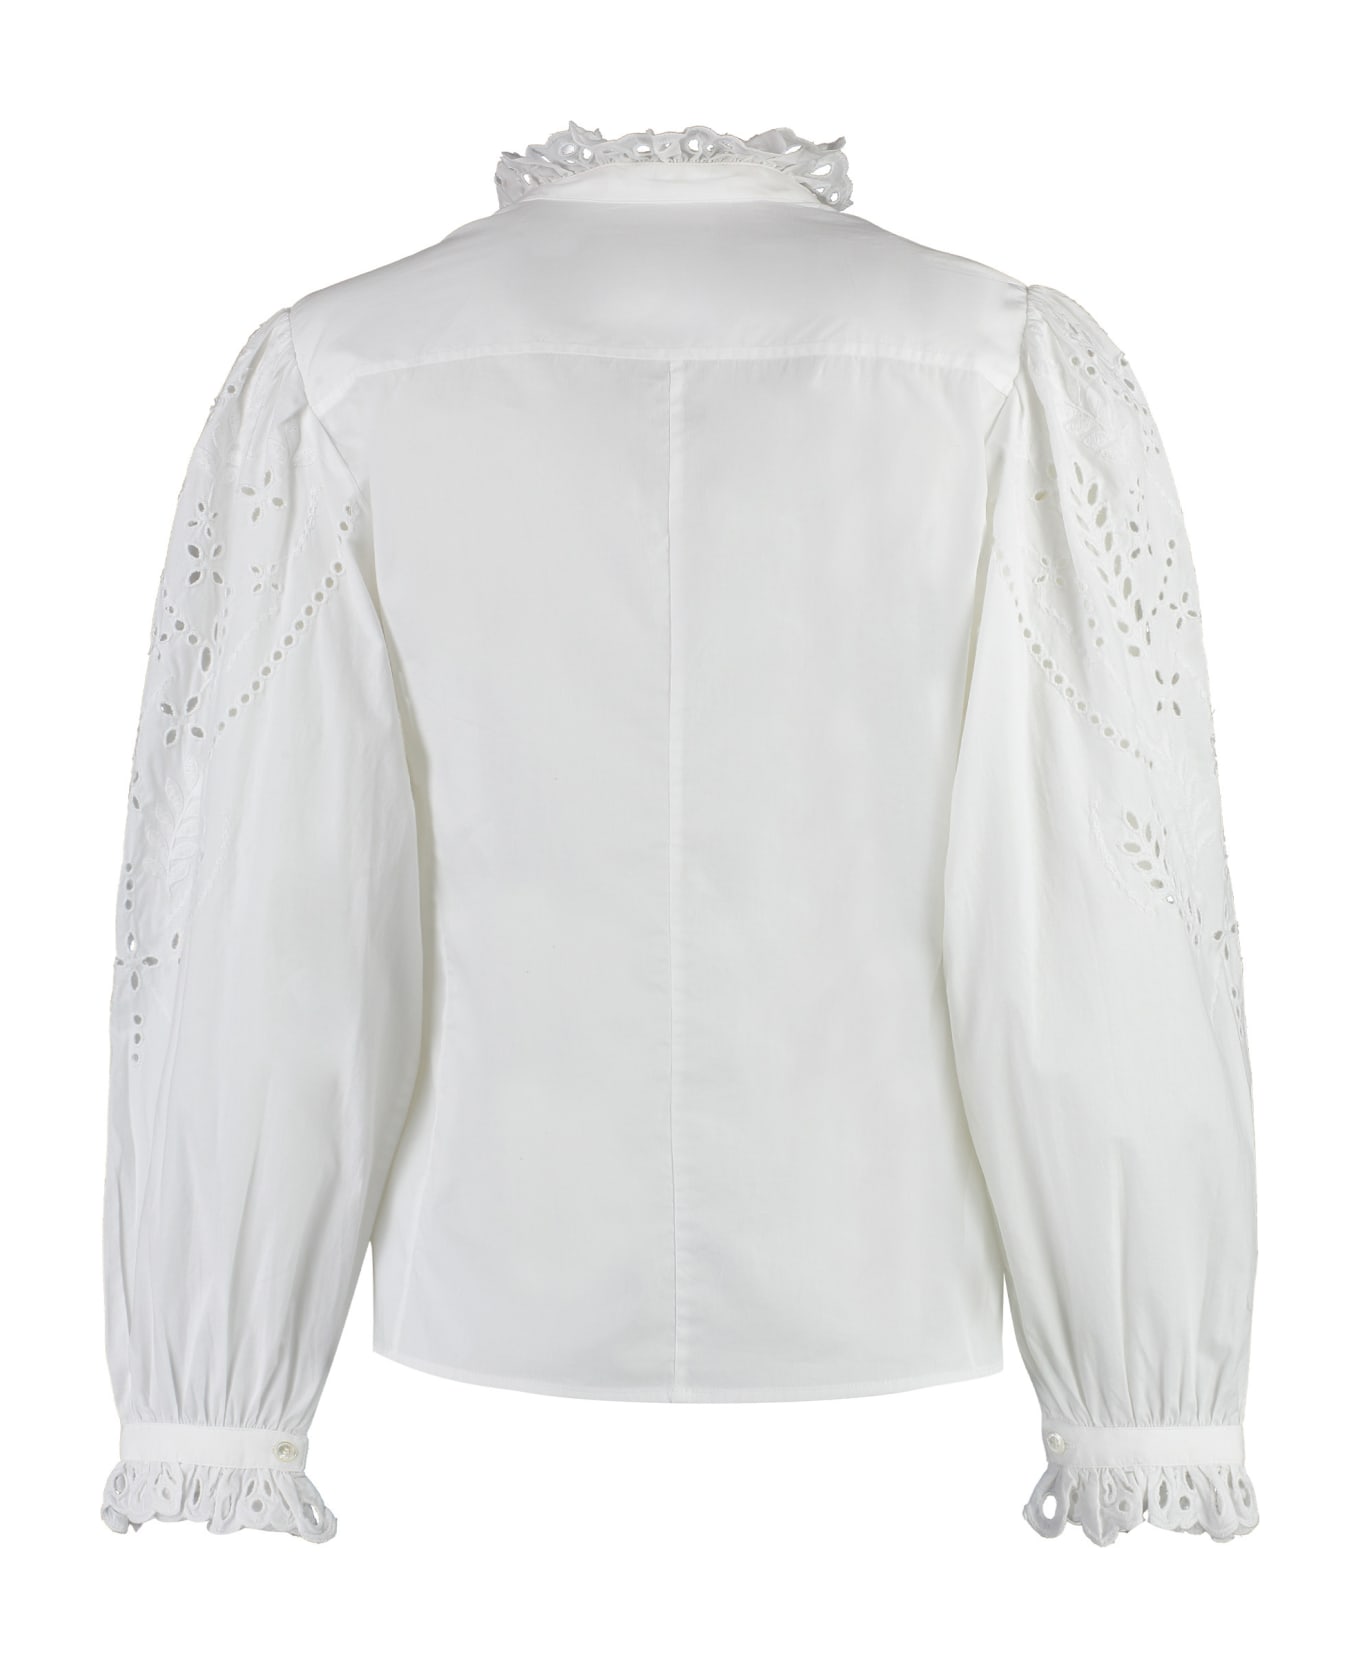 Marant Étoile Raissa Shirt - White